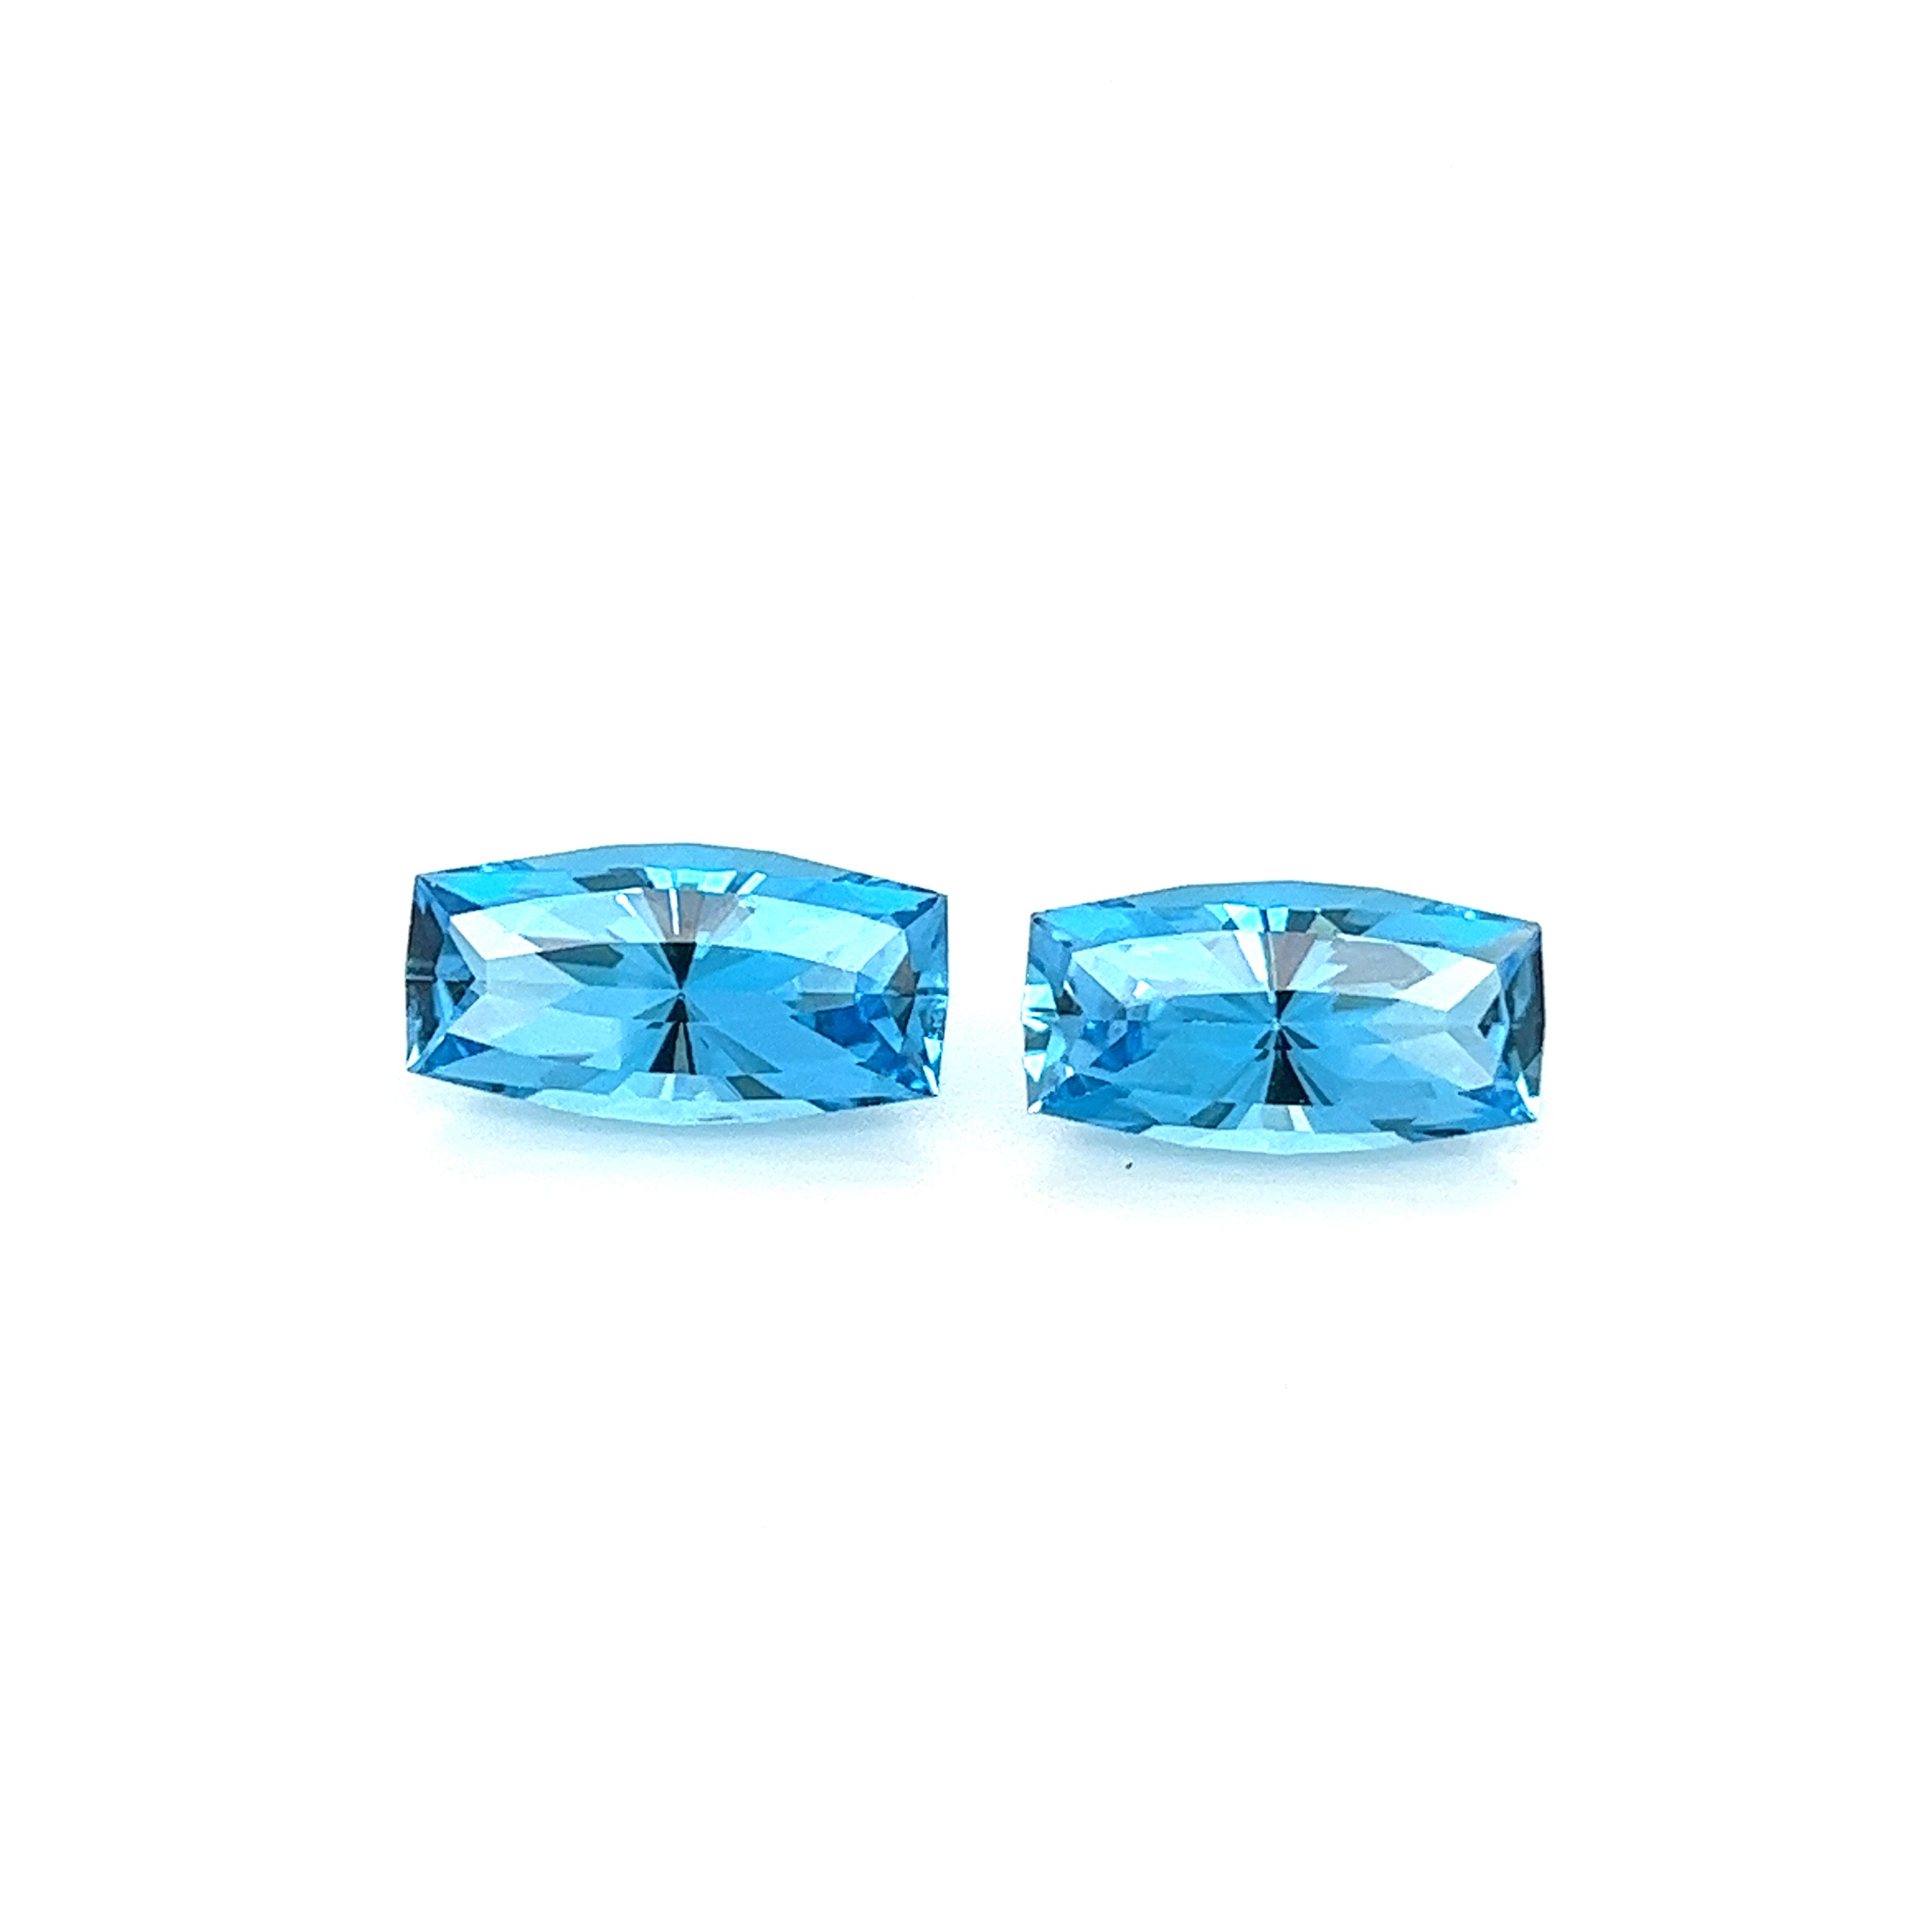 Blue Topaz Gemstones; Natural Brazil Topaz, 10.480cts - Mark Oliver Gems